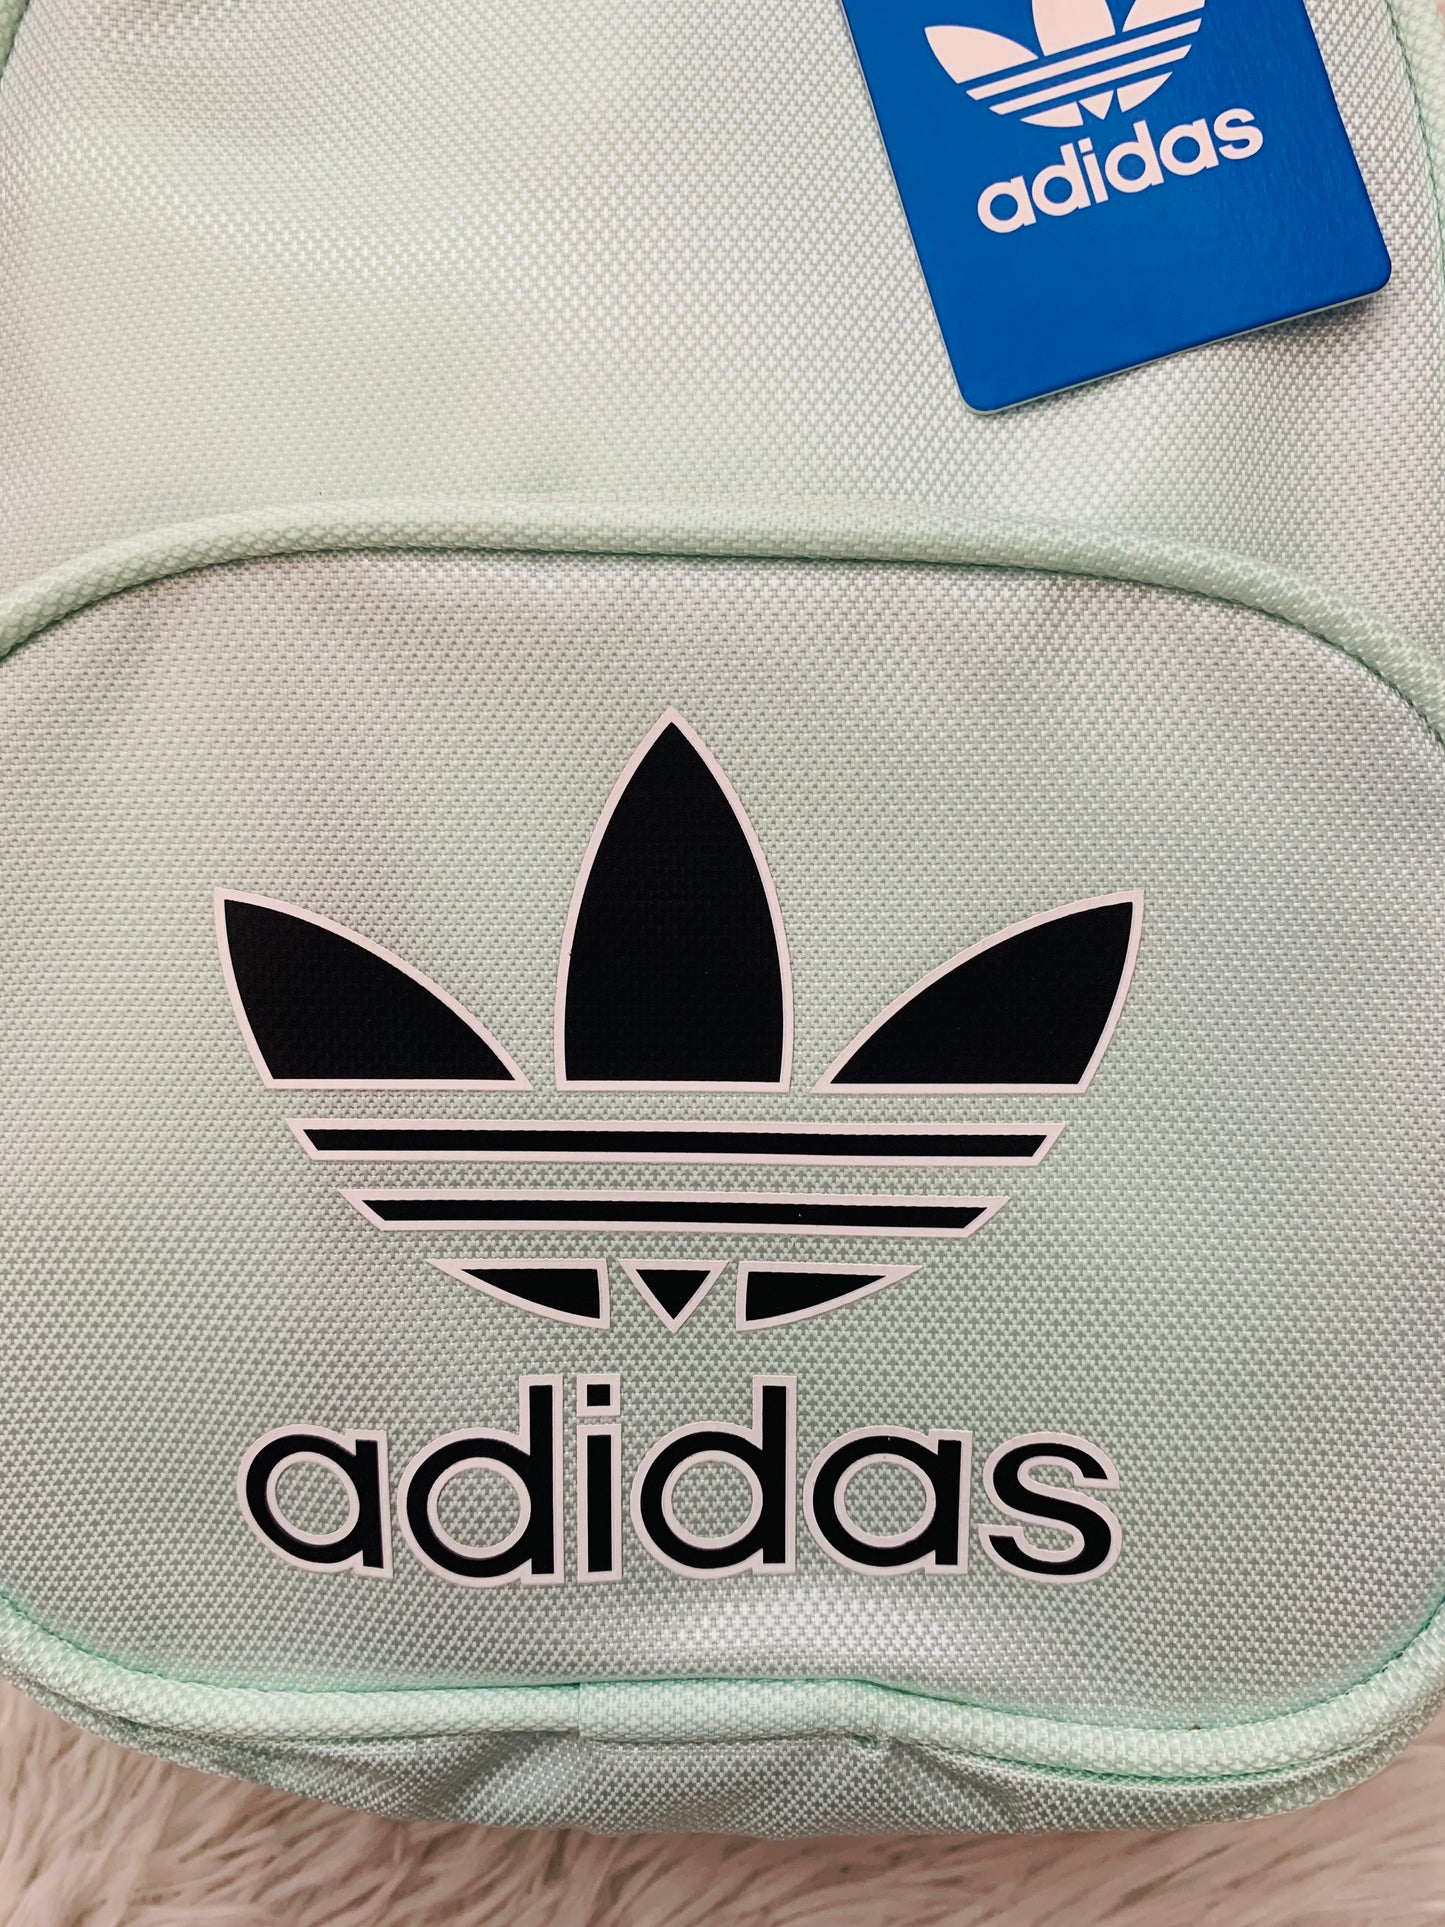 Mochila Adidas original en color verde turquesa con letras al frente ADIDAS y logo tipo en color blanco, negro bolsillo en frente